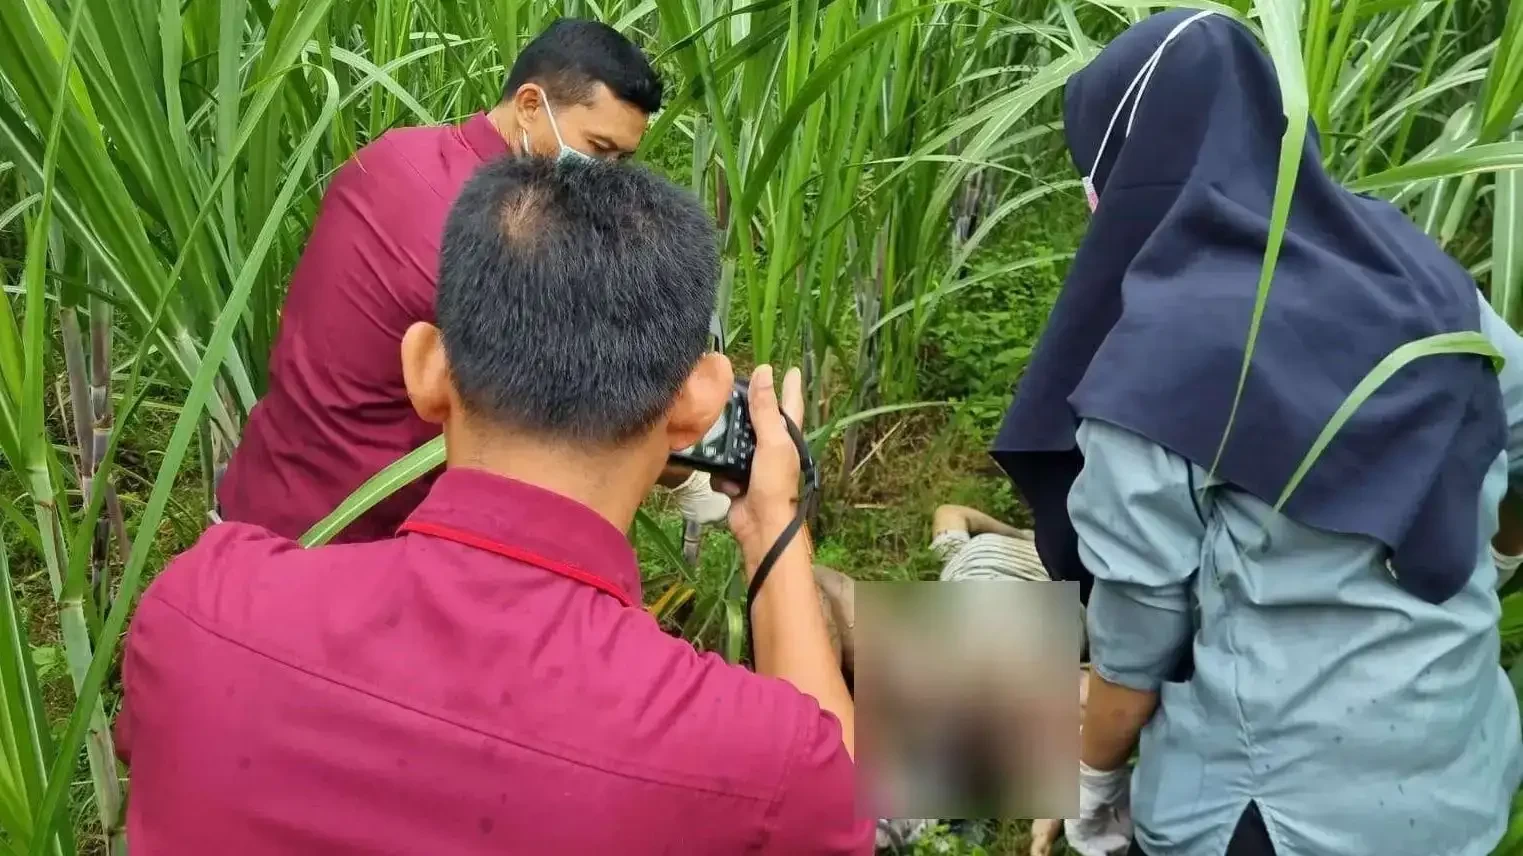 Identitas mayat perempuan di kebun tebu bersama bayinya terungkap. (Foto: Istimewa)